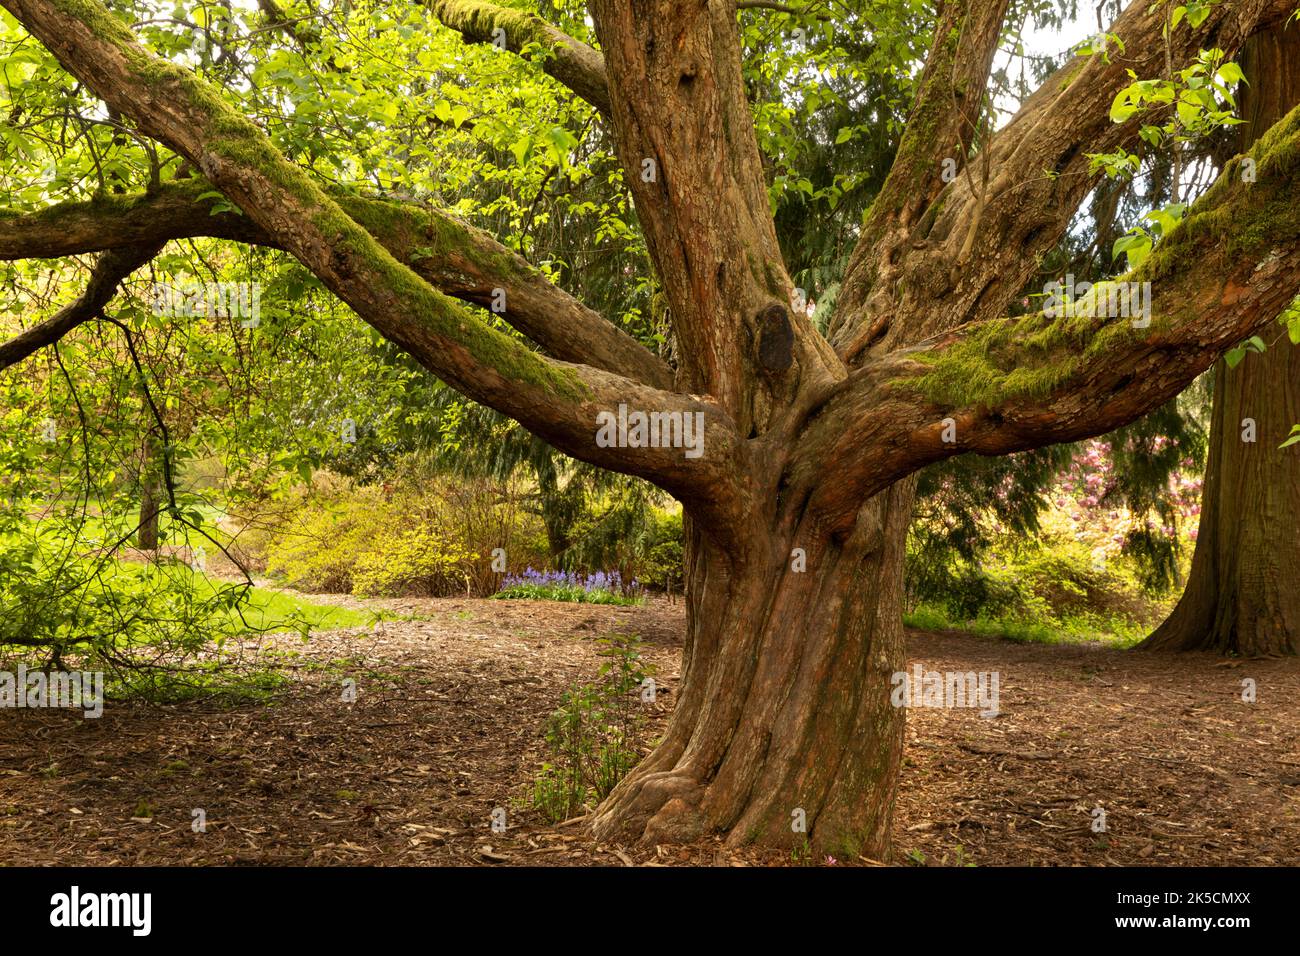 WA22153-00...WASHINGTON - Graceful old tree at the Washington Park Arboretum in Seattle. Stock Photo